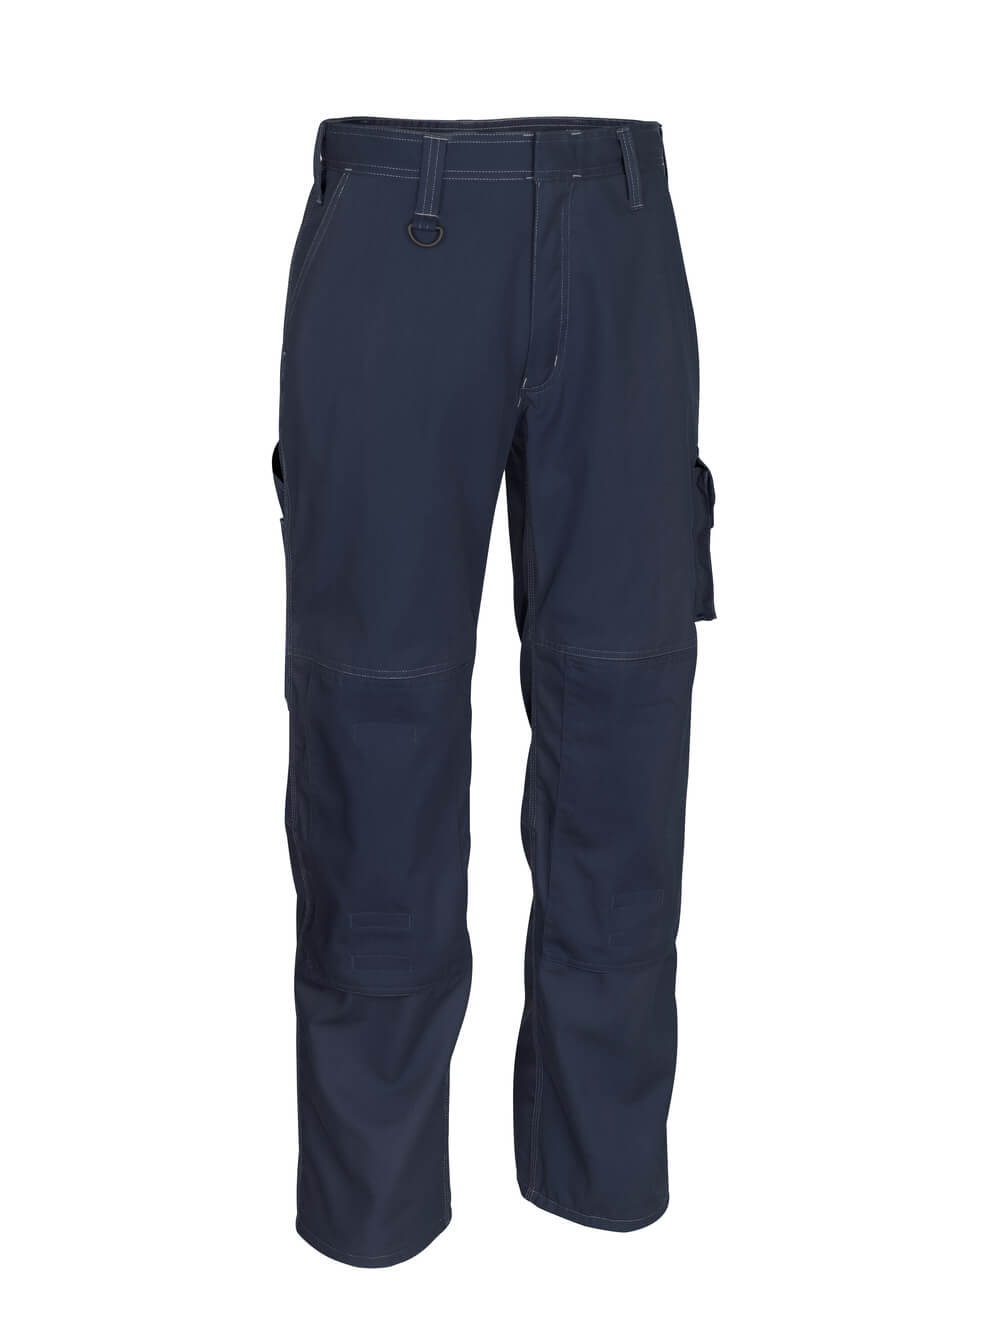 MASCOT® INDUSTRY Hose mit Knietaschen »Biloxi« Gr. 76/C46, schwarzblau - erhältlich bei ♡ HUG Technik ✓